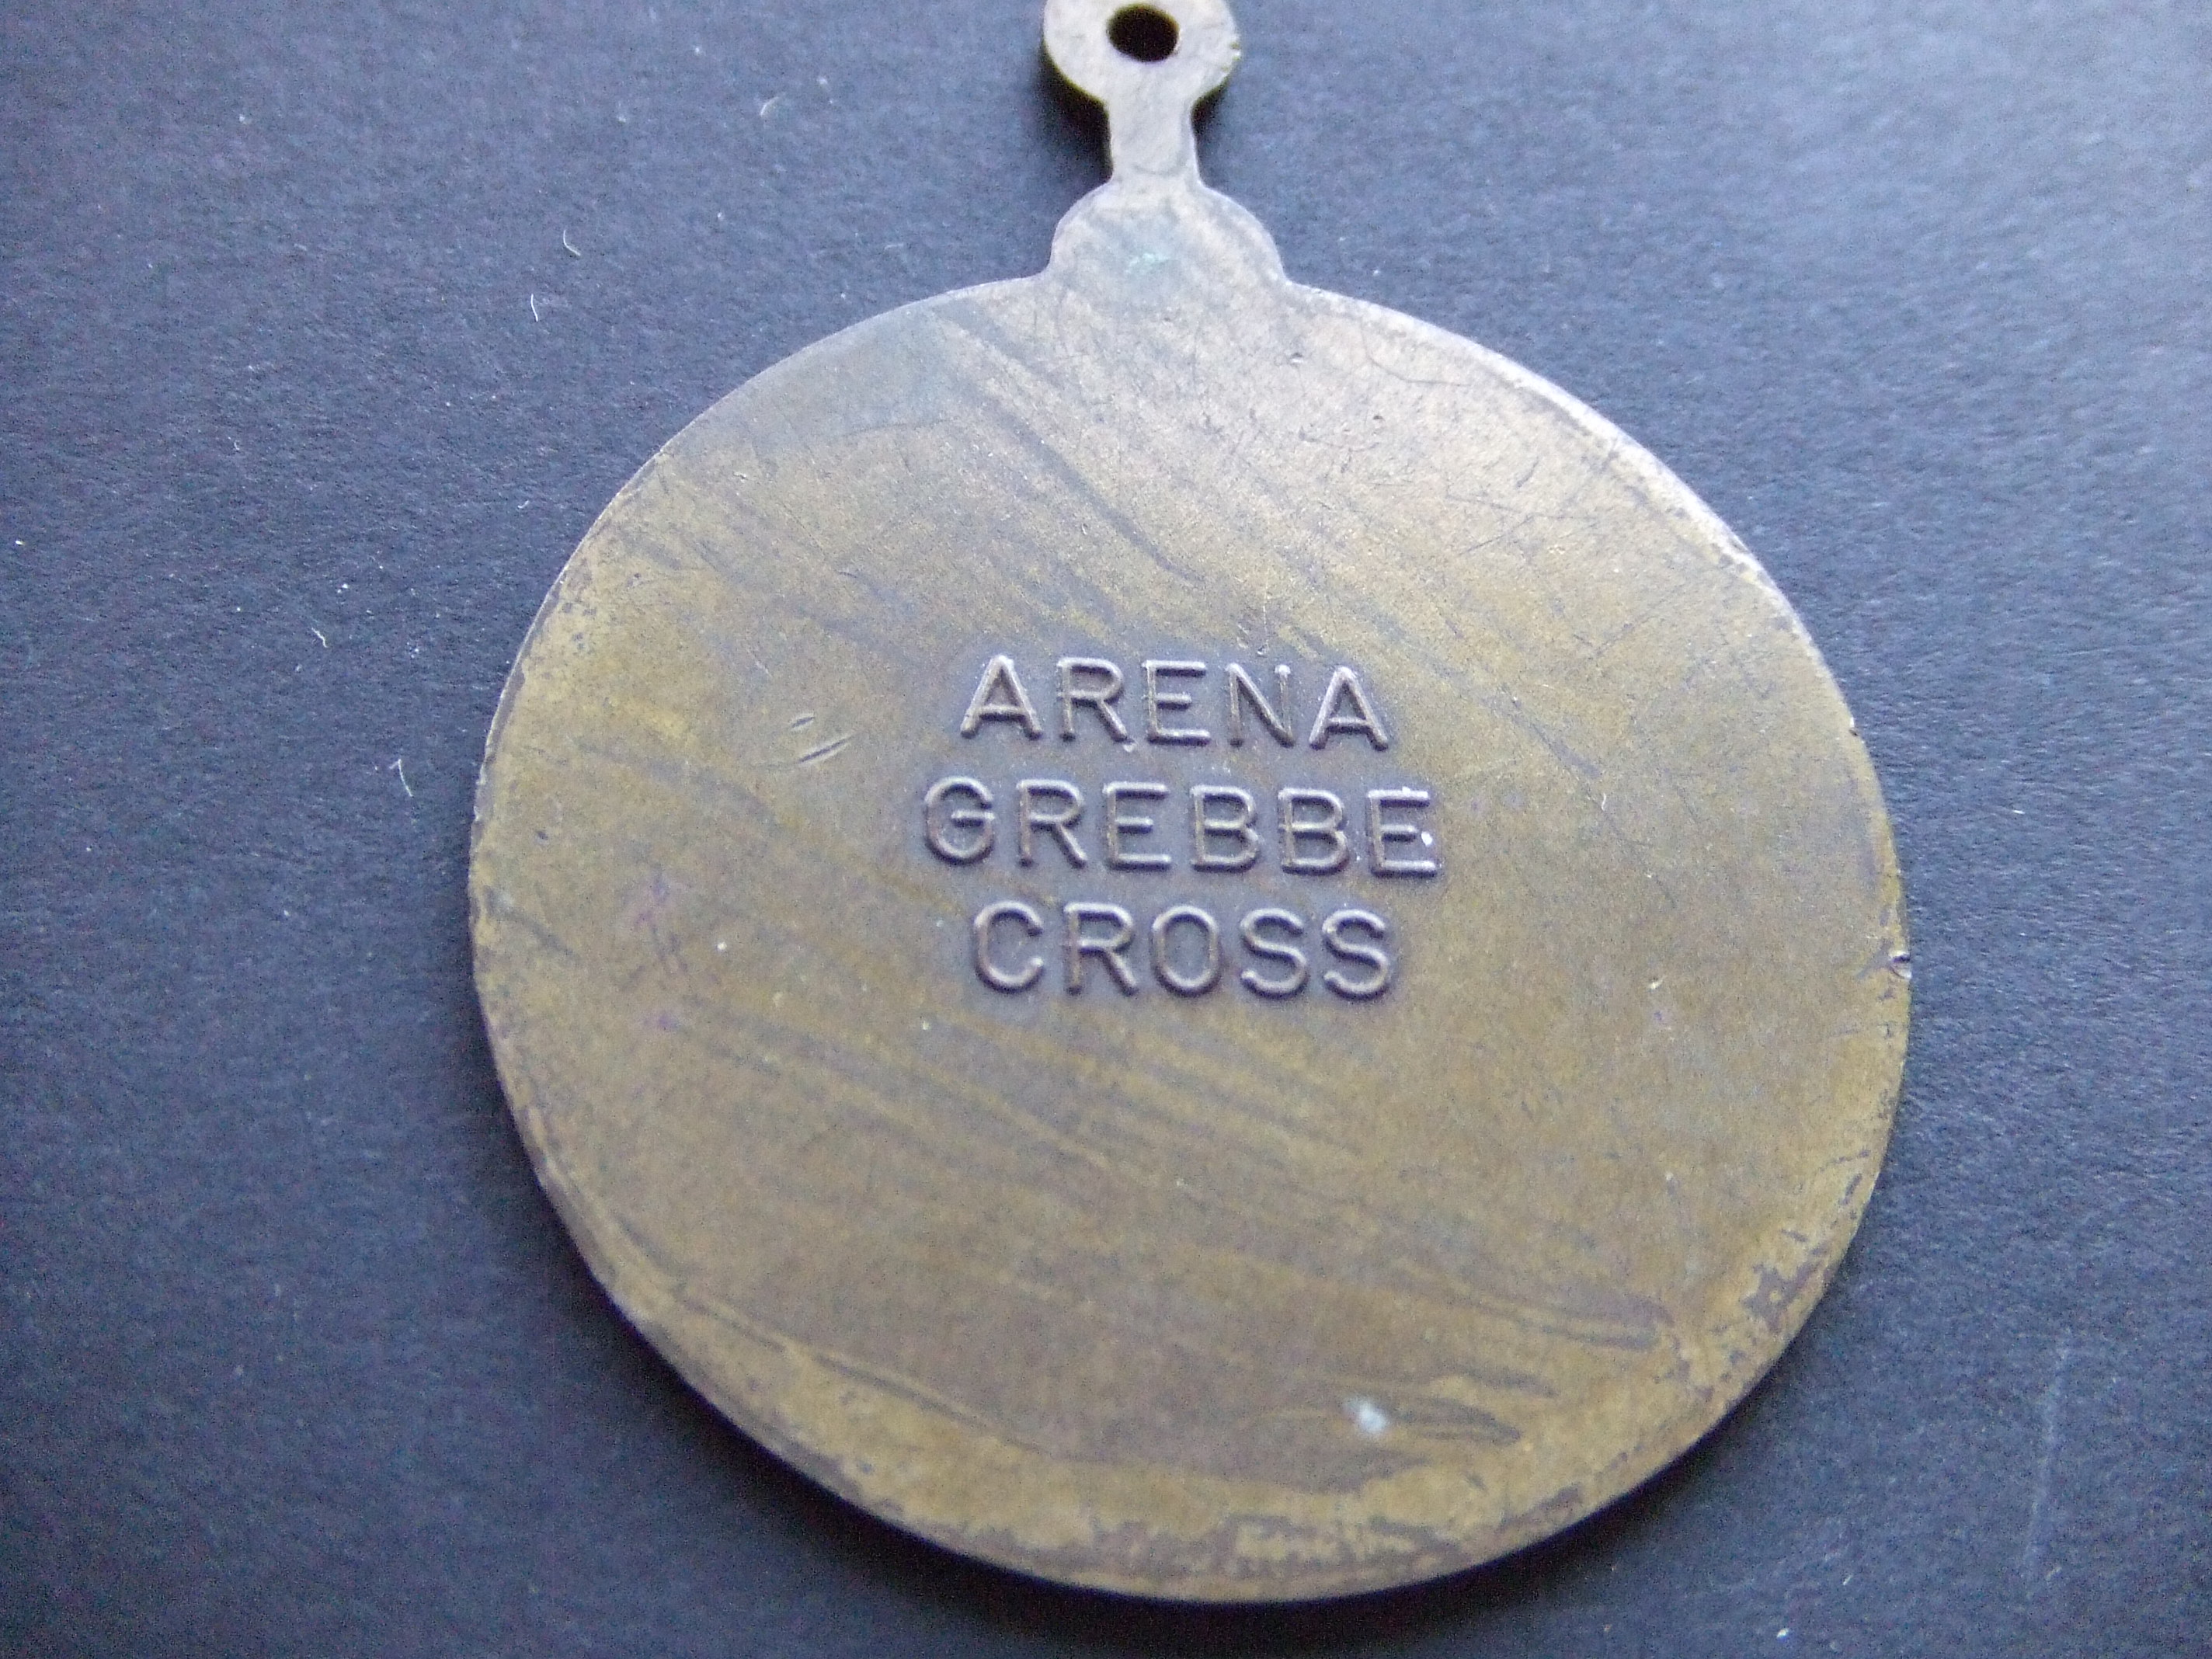 Arena atletiekvereniging Grebbe cross Grebbeberg in Rhenen (2)